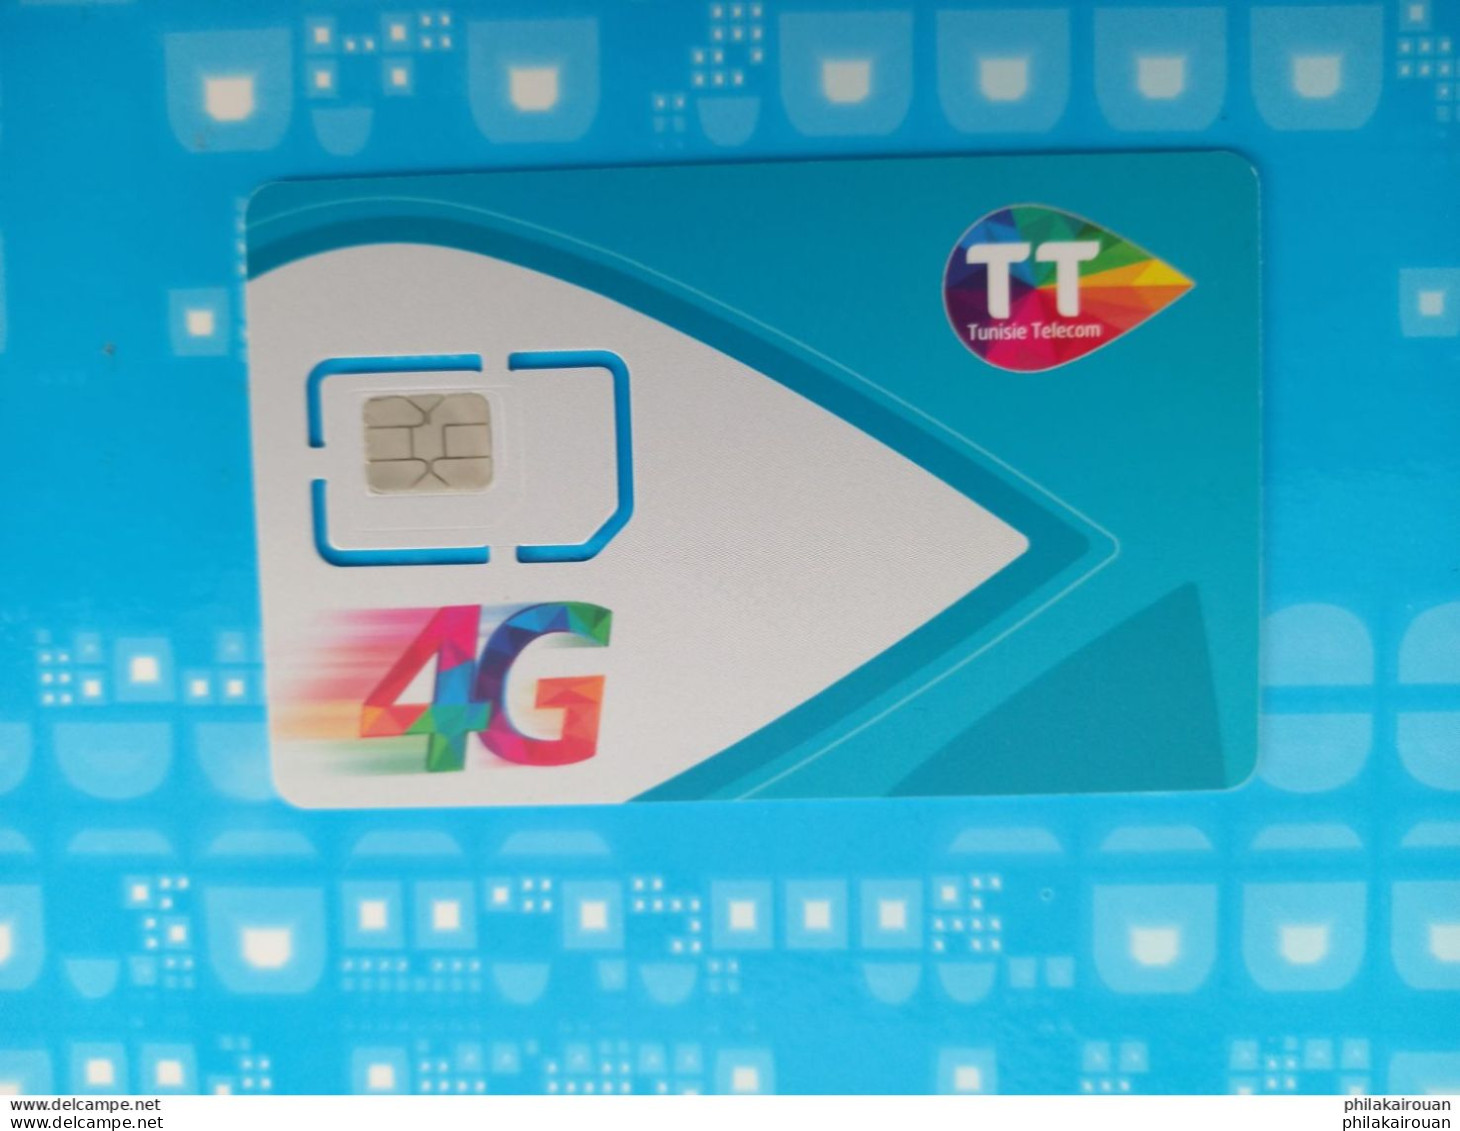 Carte SIM 4G Tunisietelecom. - Tunisie